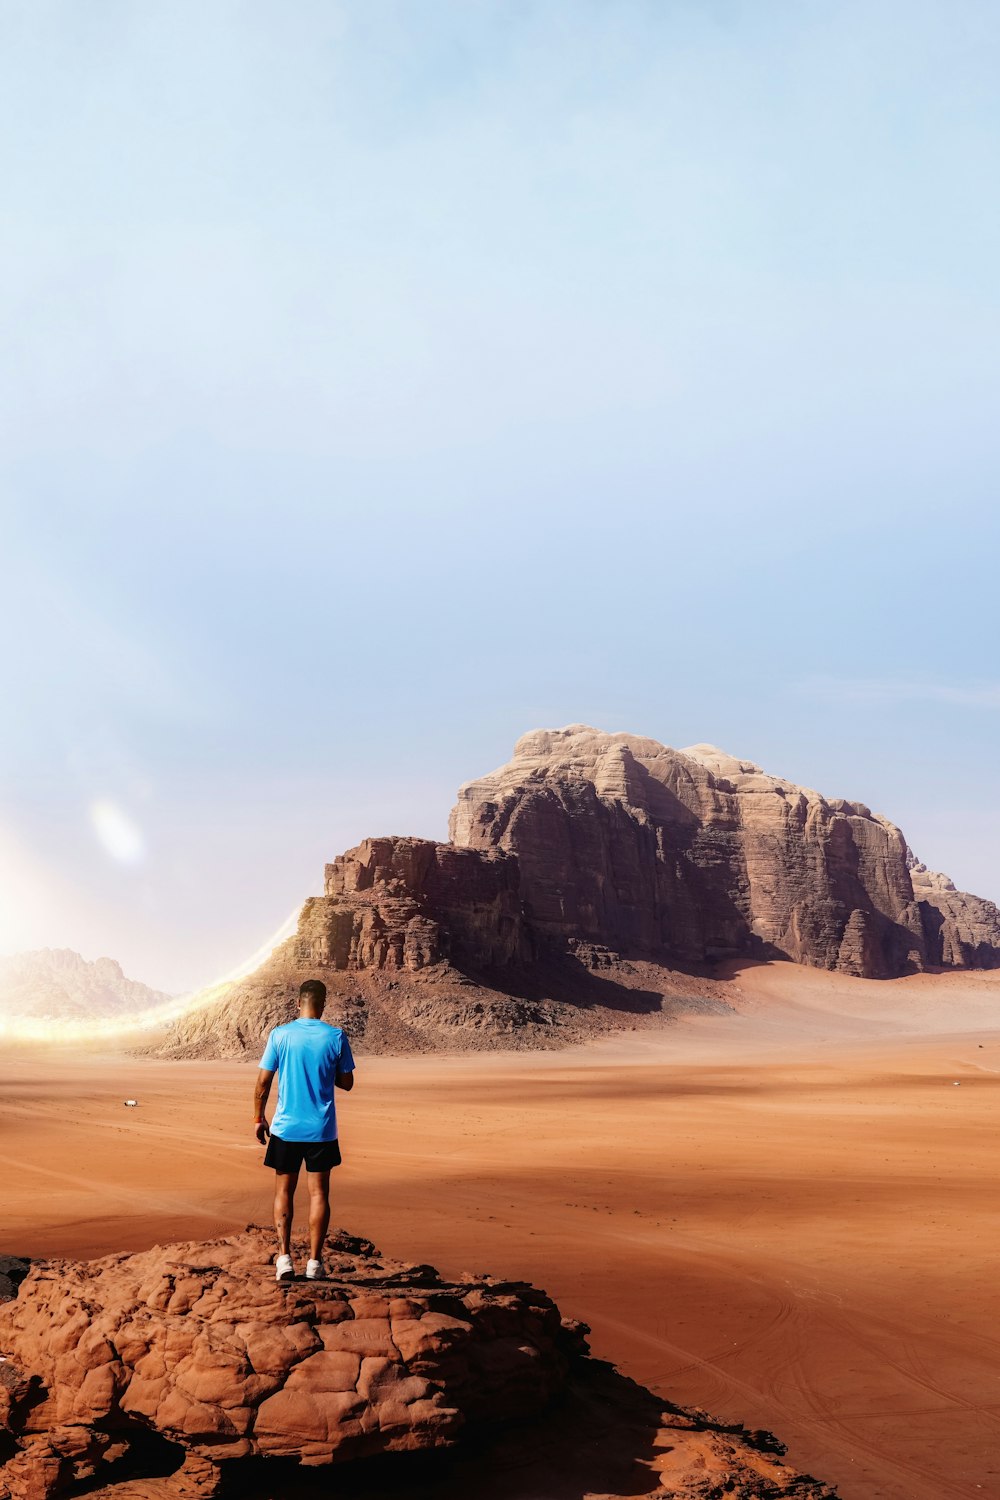 사막 한가운데의 바위 위에 서 있는 남자